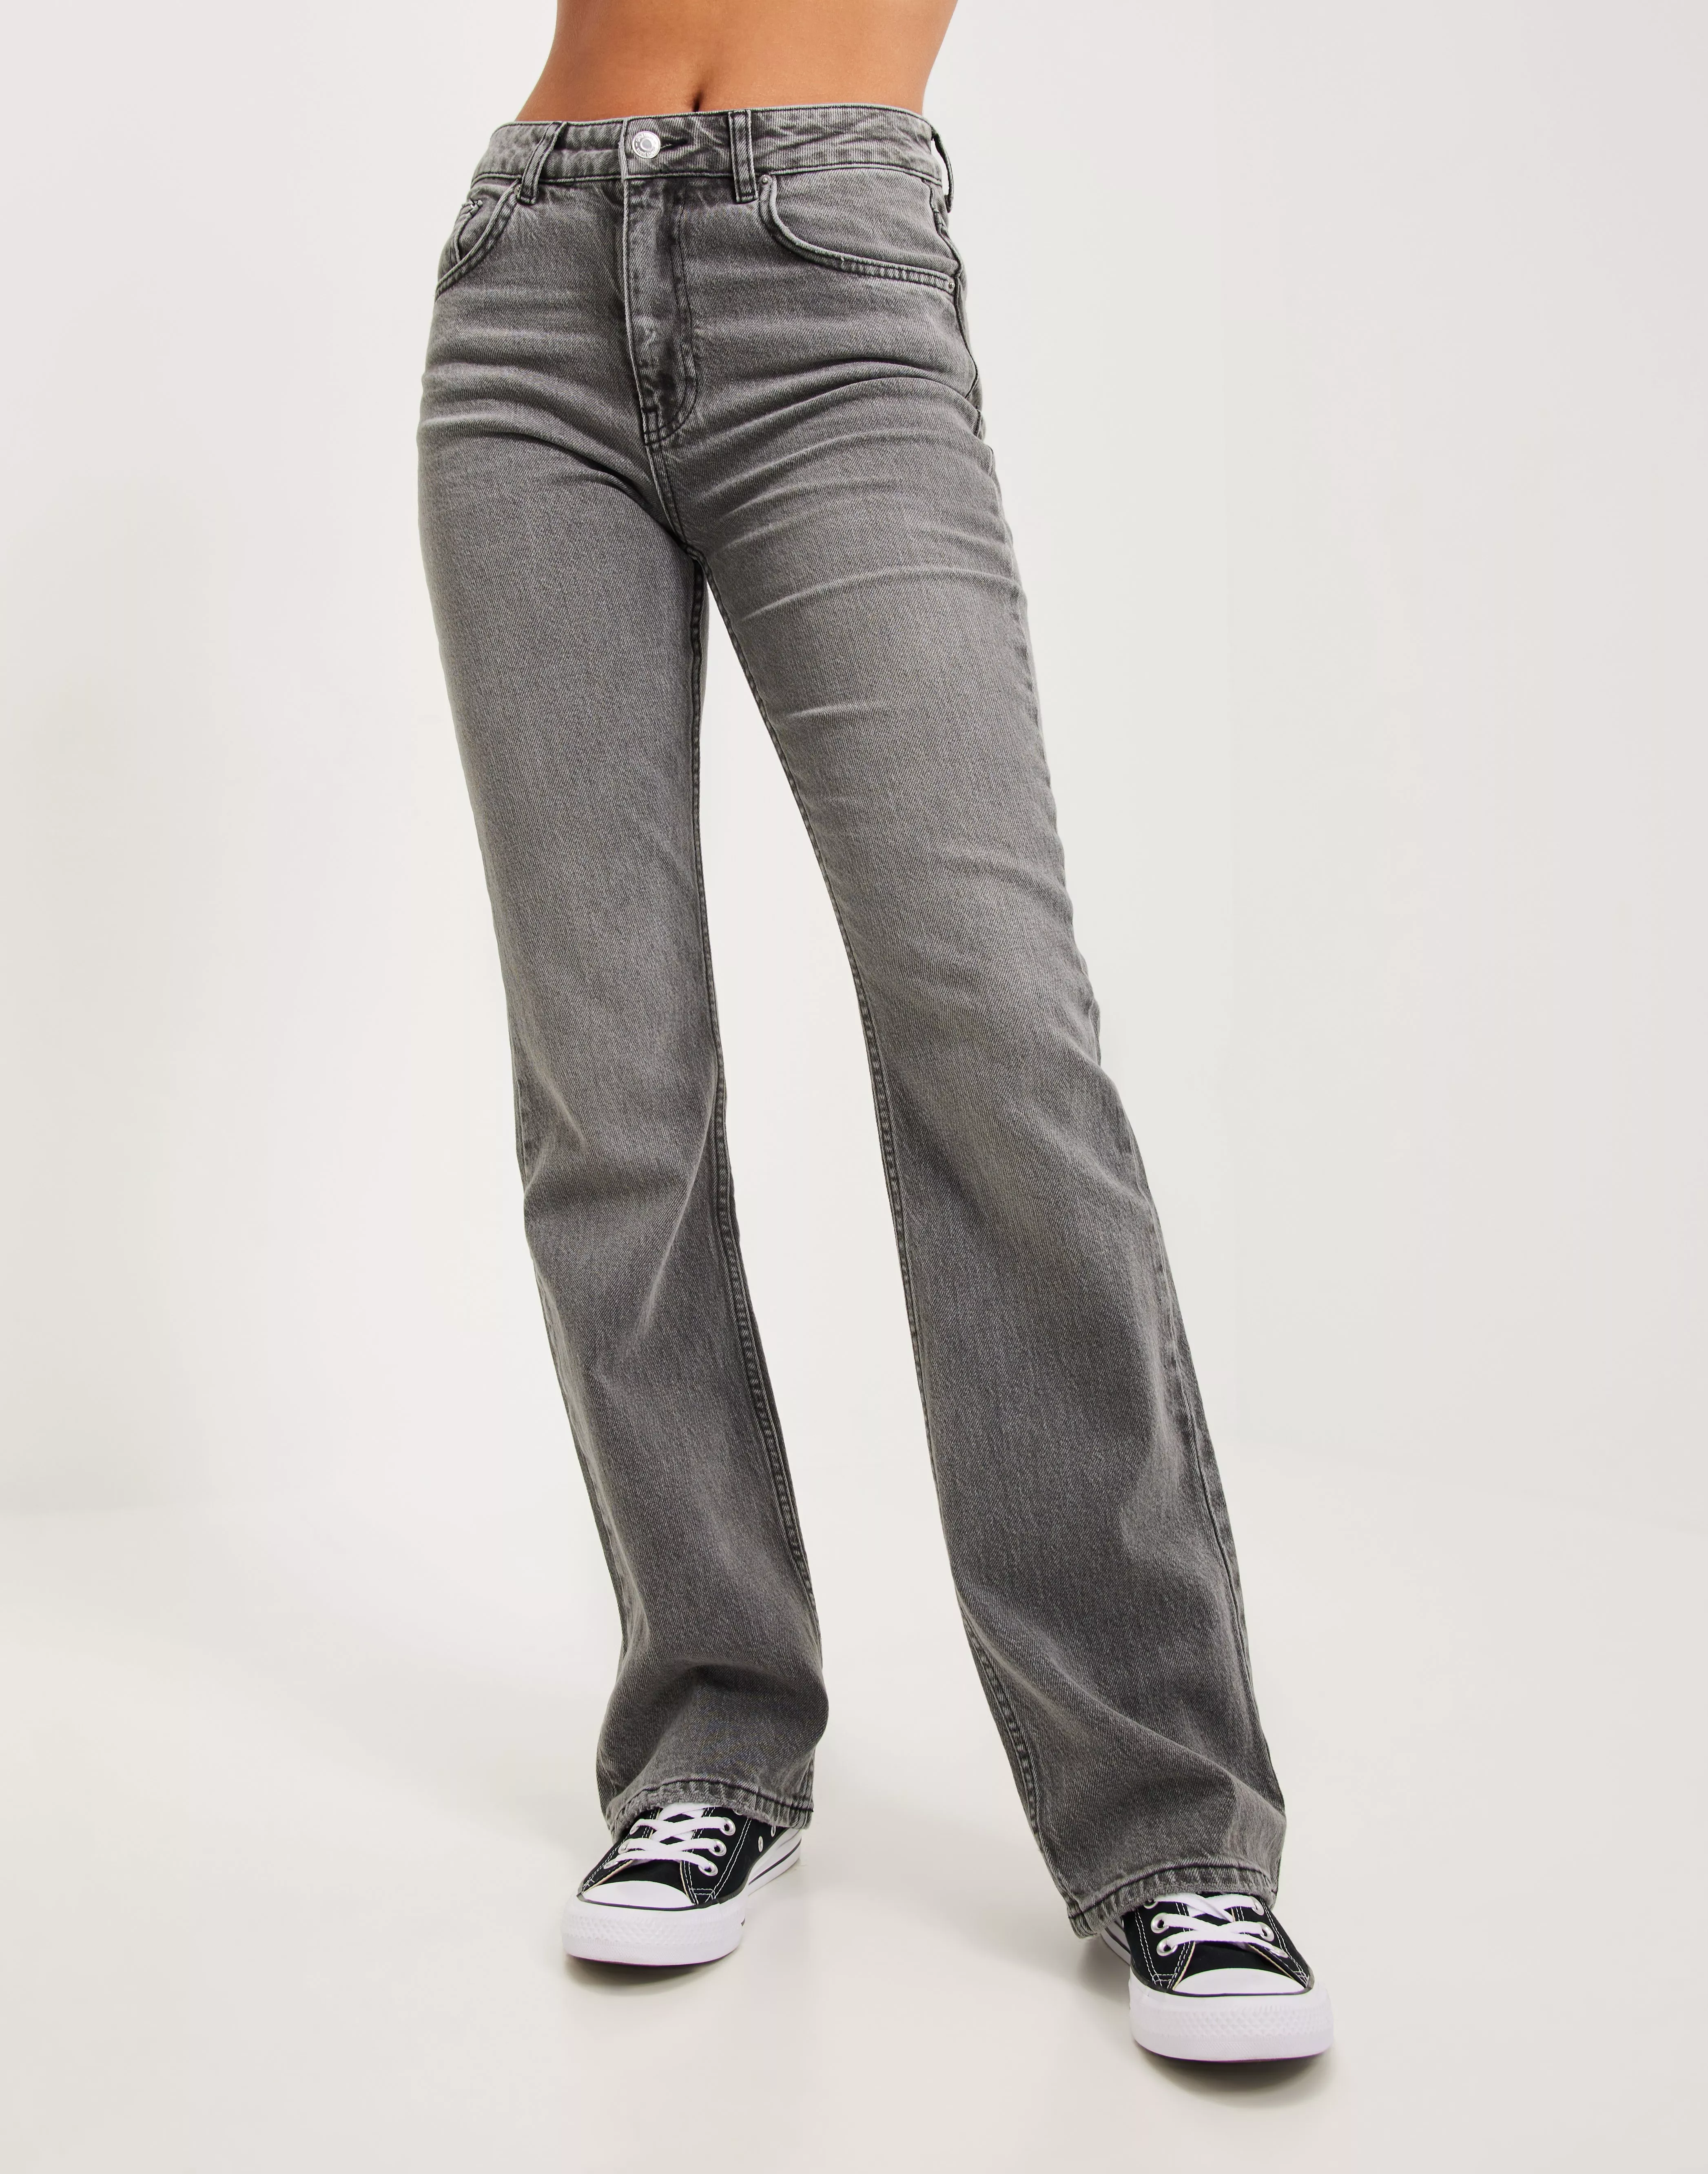 Low Waist Jeans Grey